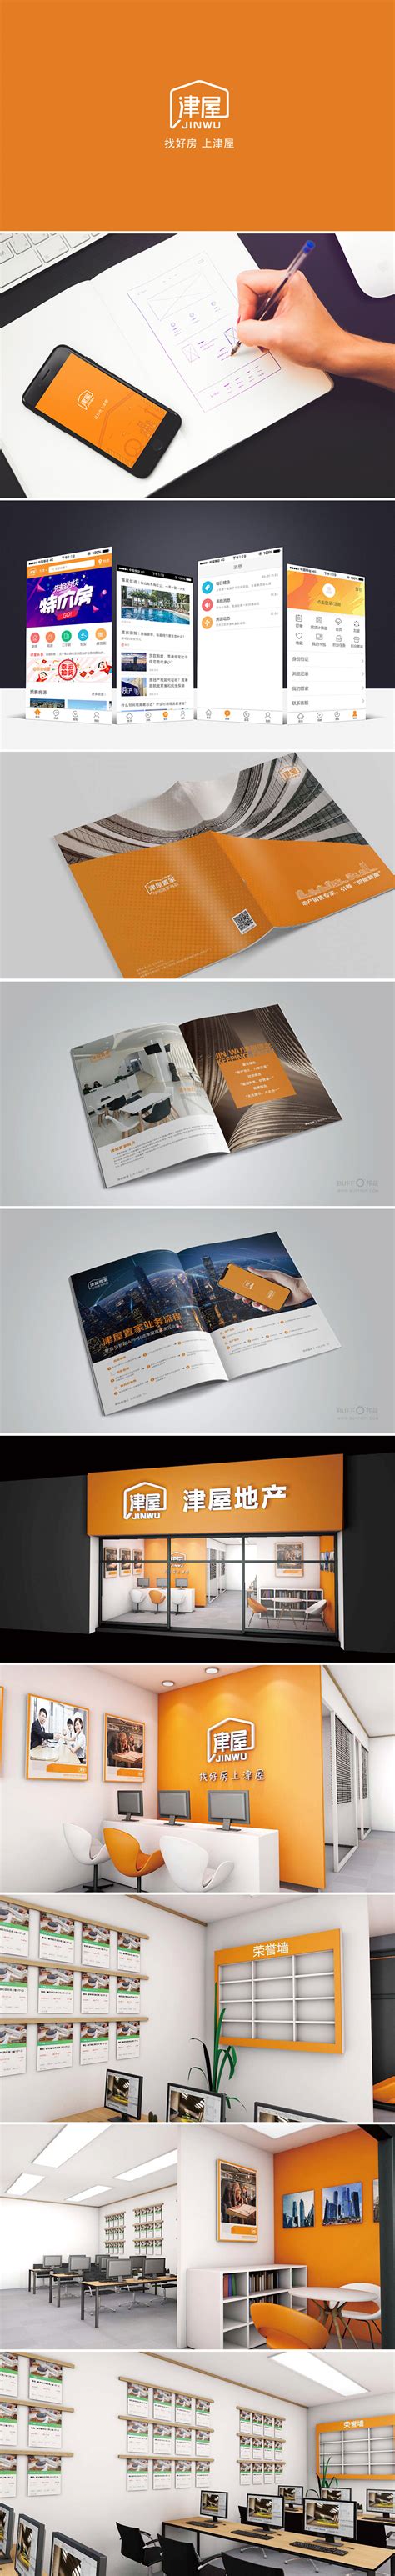 天津品牌策划设计_天津VI画册设计-抓品牌的创意思考方式-天津品牌策划设计